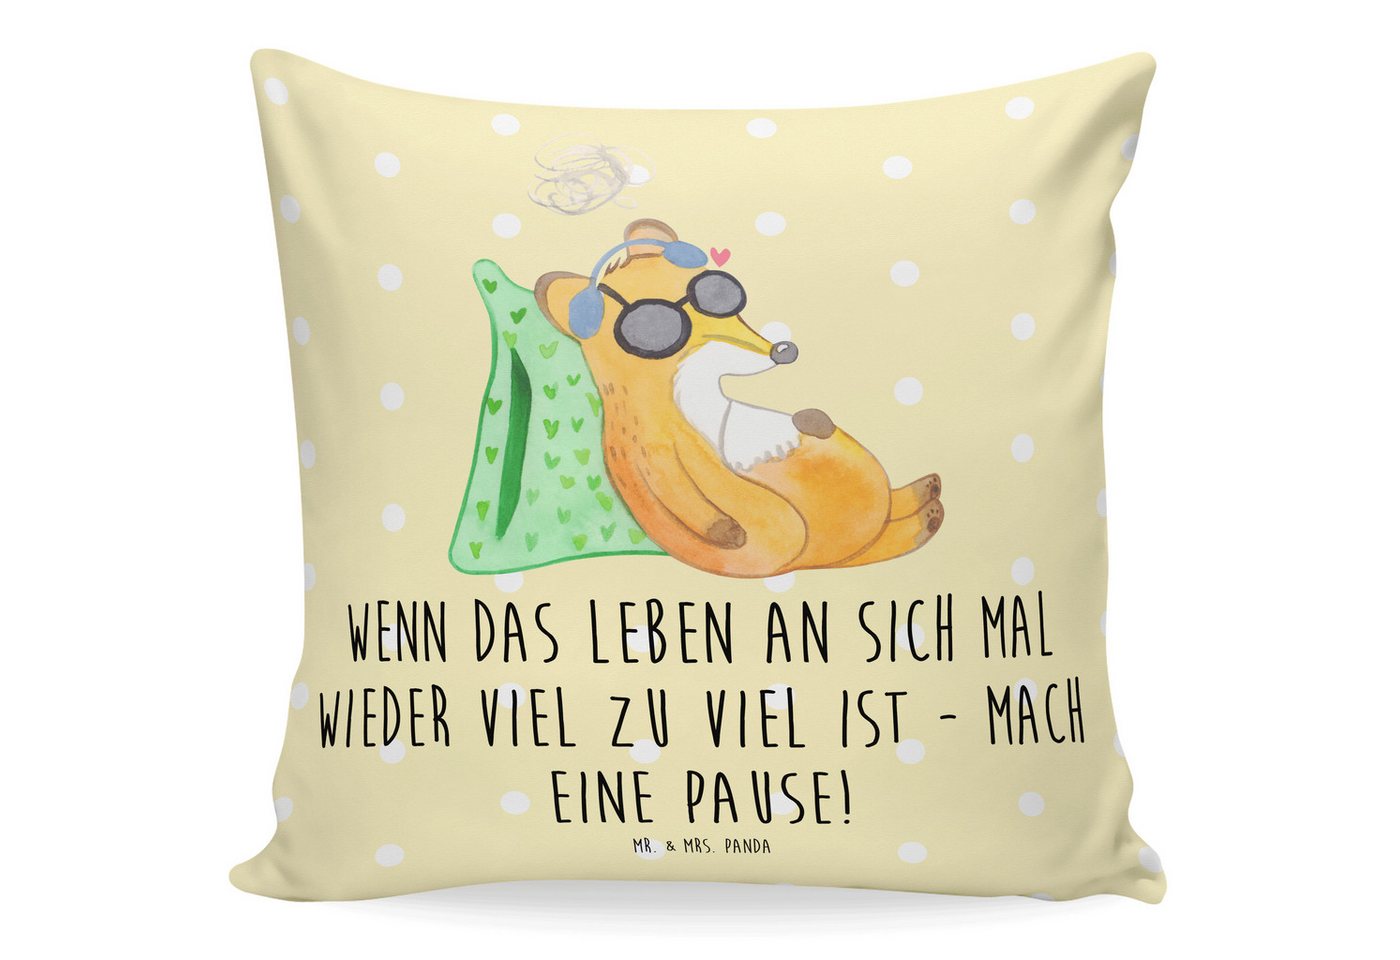 Mr. & Mrs. Panda Dekokissen Fuchs Neurodiversität - Gelb Pastell - Geschenk, Sofakissen, Kissenh, Einzigartige Designs von Mr. & Mrs. Panda